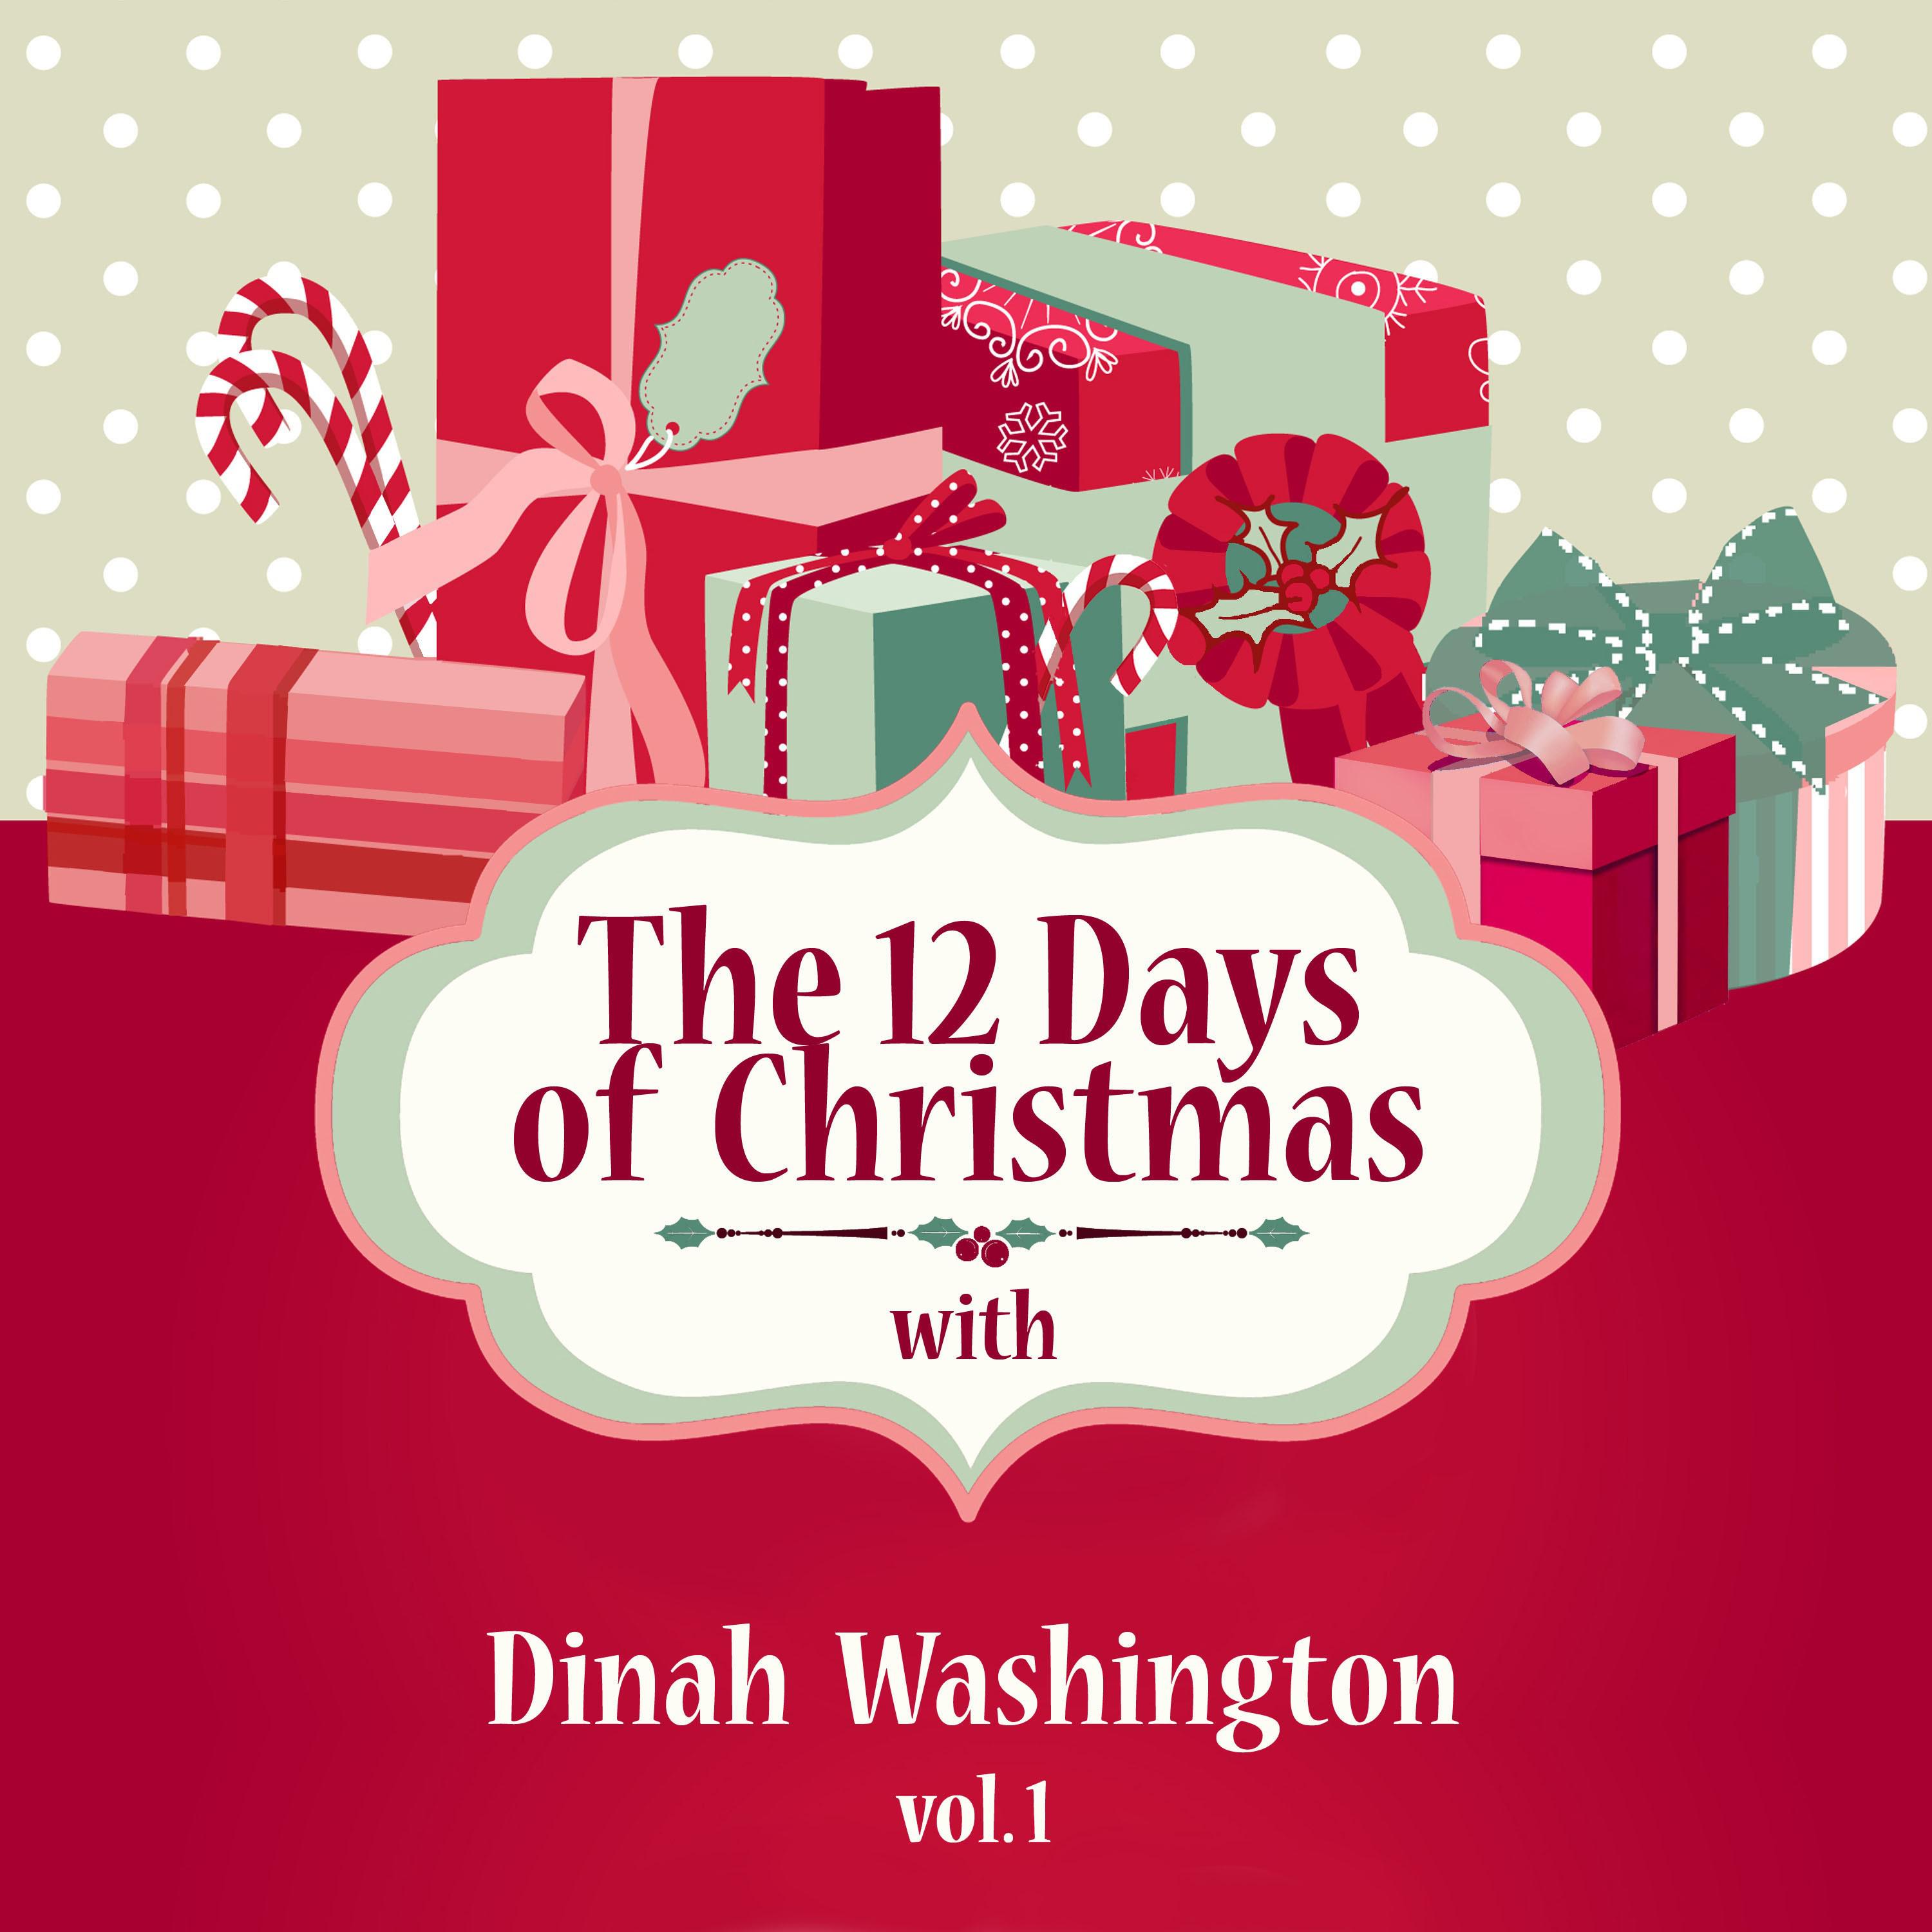 The 12 Days of Christmas with Dinah Washington, Vol. 1